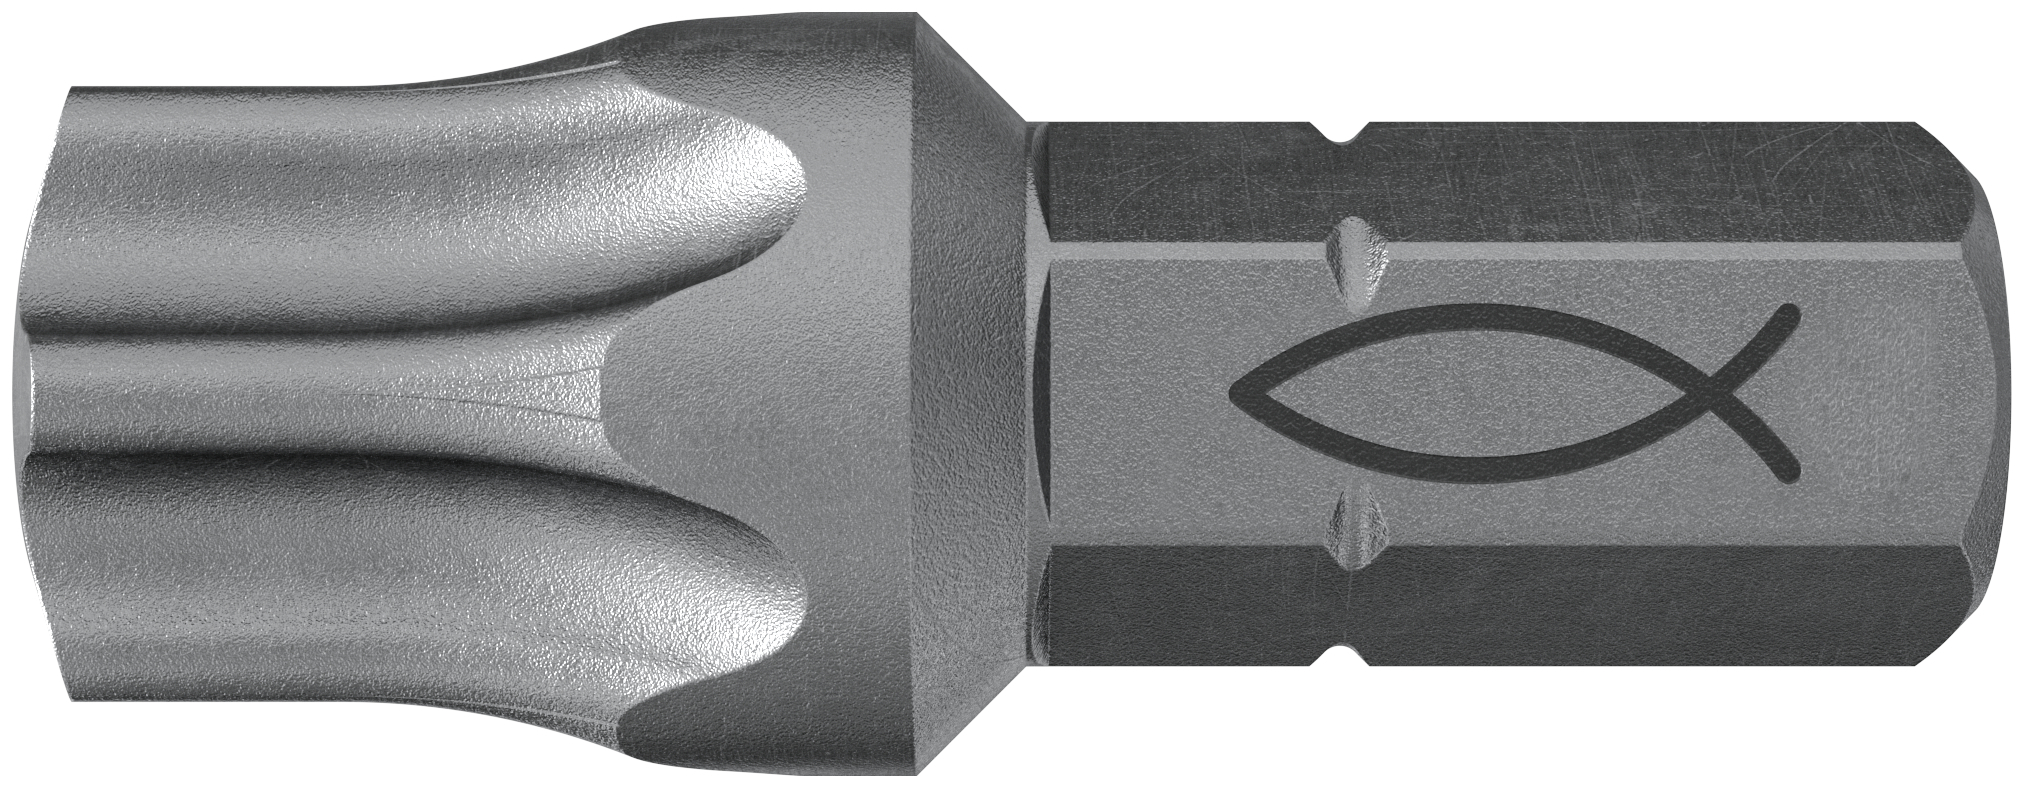 fischer Inserto per avvitatore FPB T 50 PROFI Bit W 10 (1 Pz.) L'inserto per trapano e avvitatore, in acciaio di alta qualit con elevata resistenza all?abrasione per uso professionale fie3762